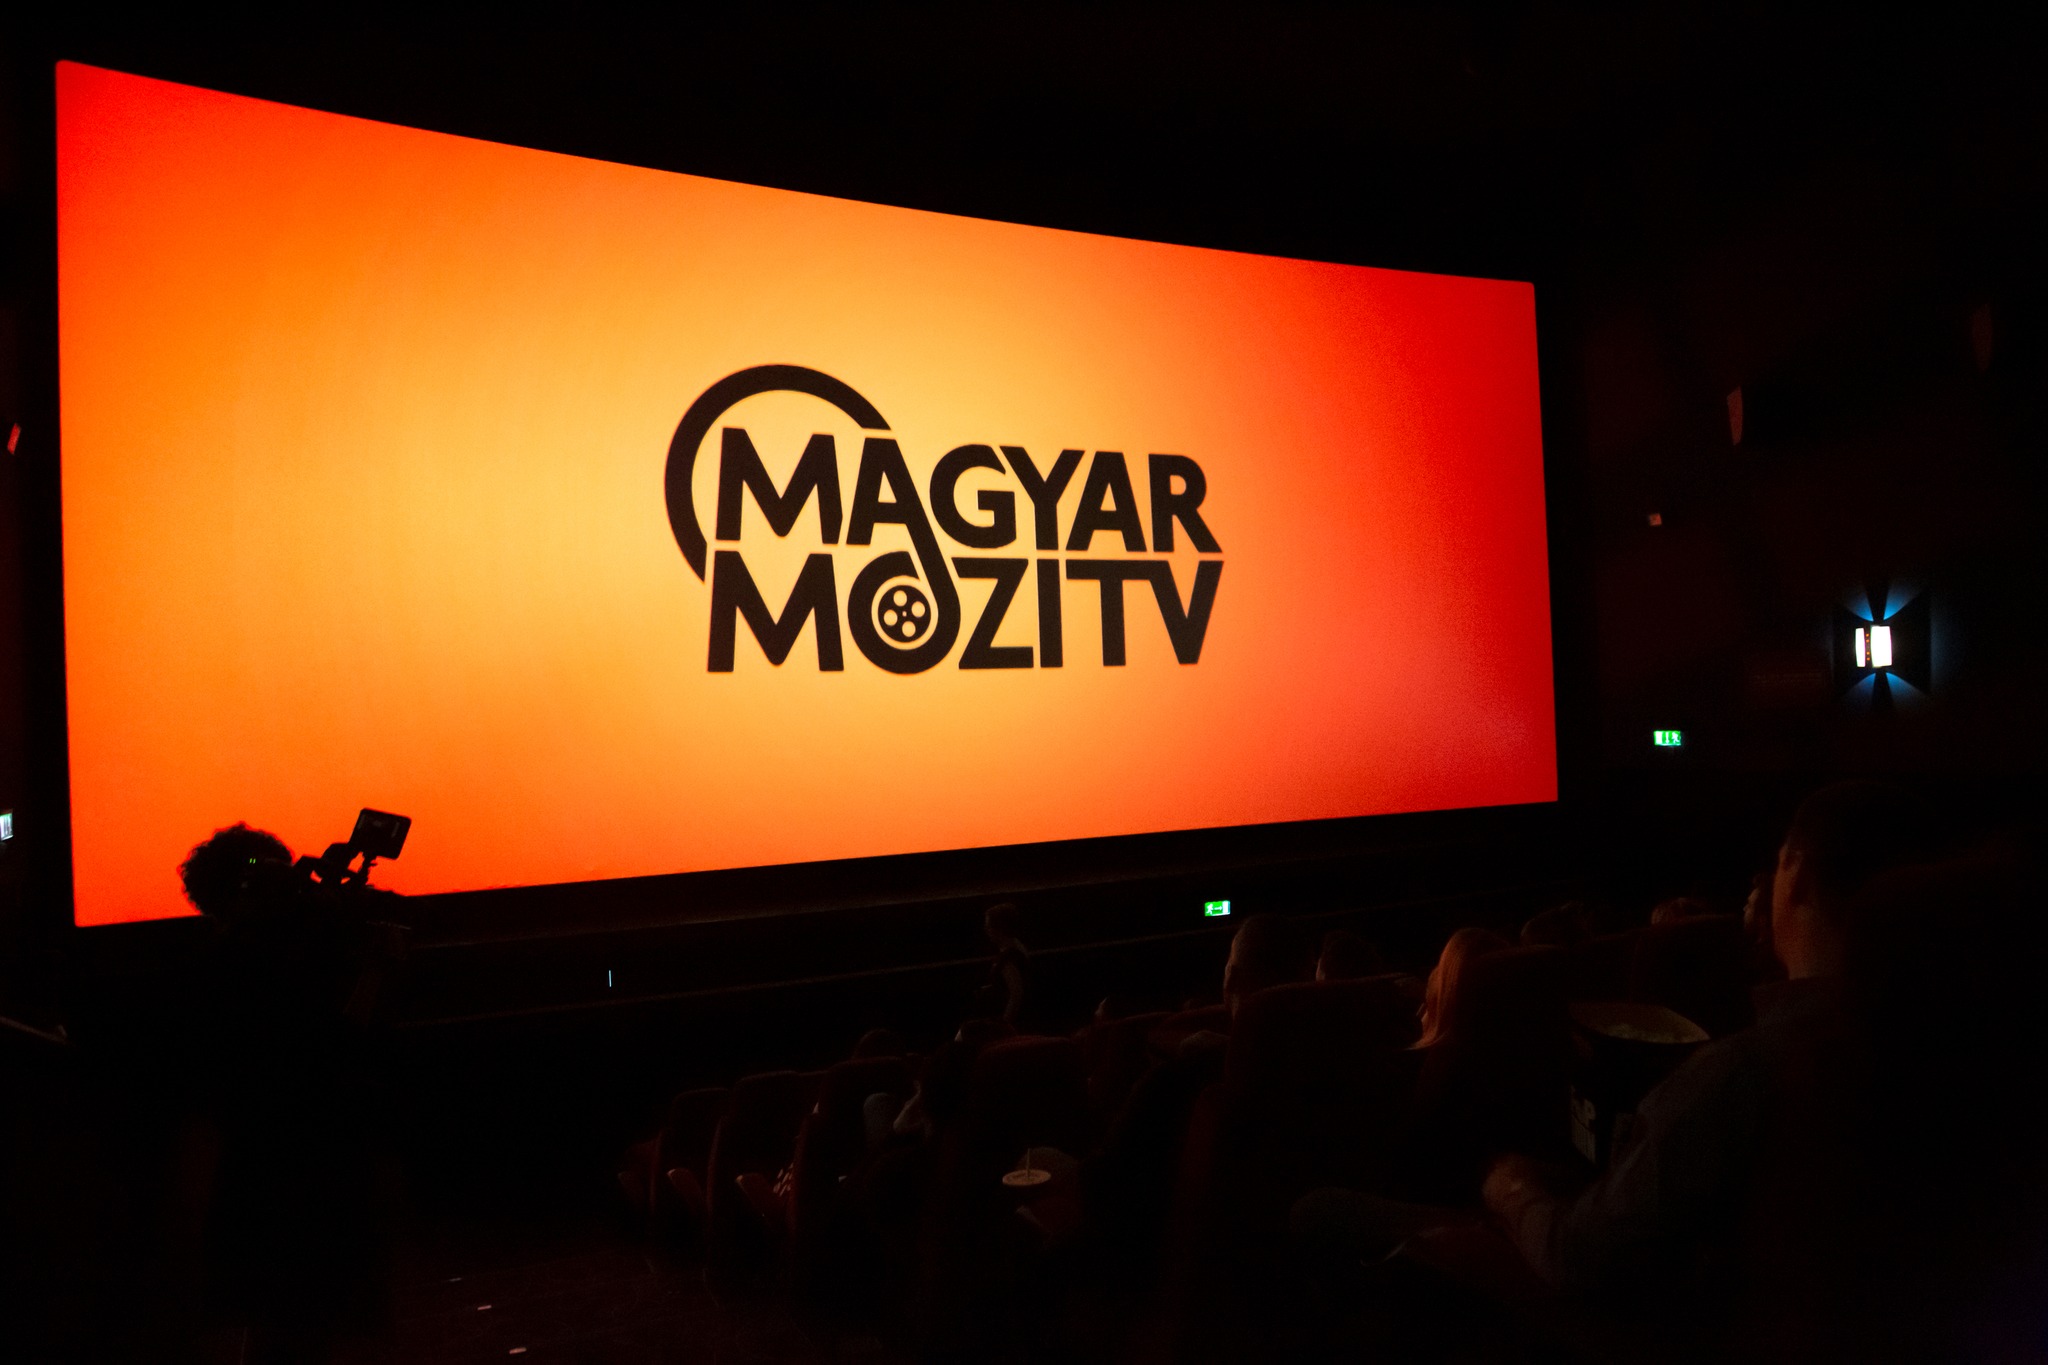 Novi mađarski program Magyar Mozi TV